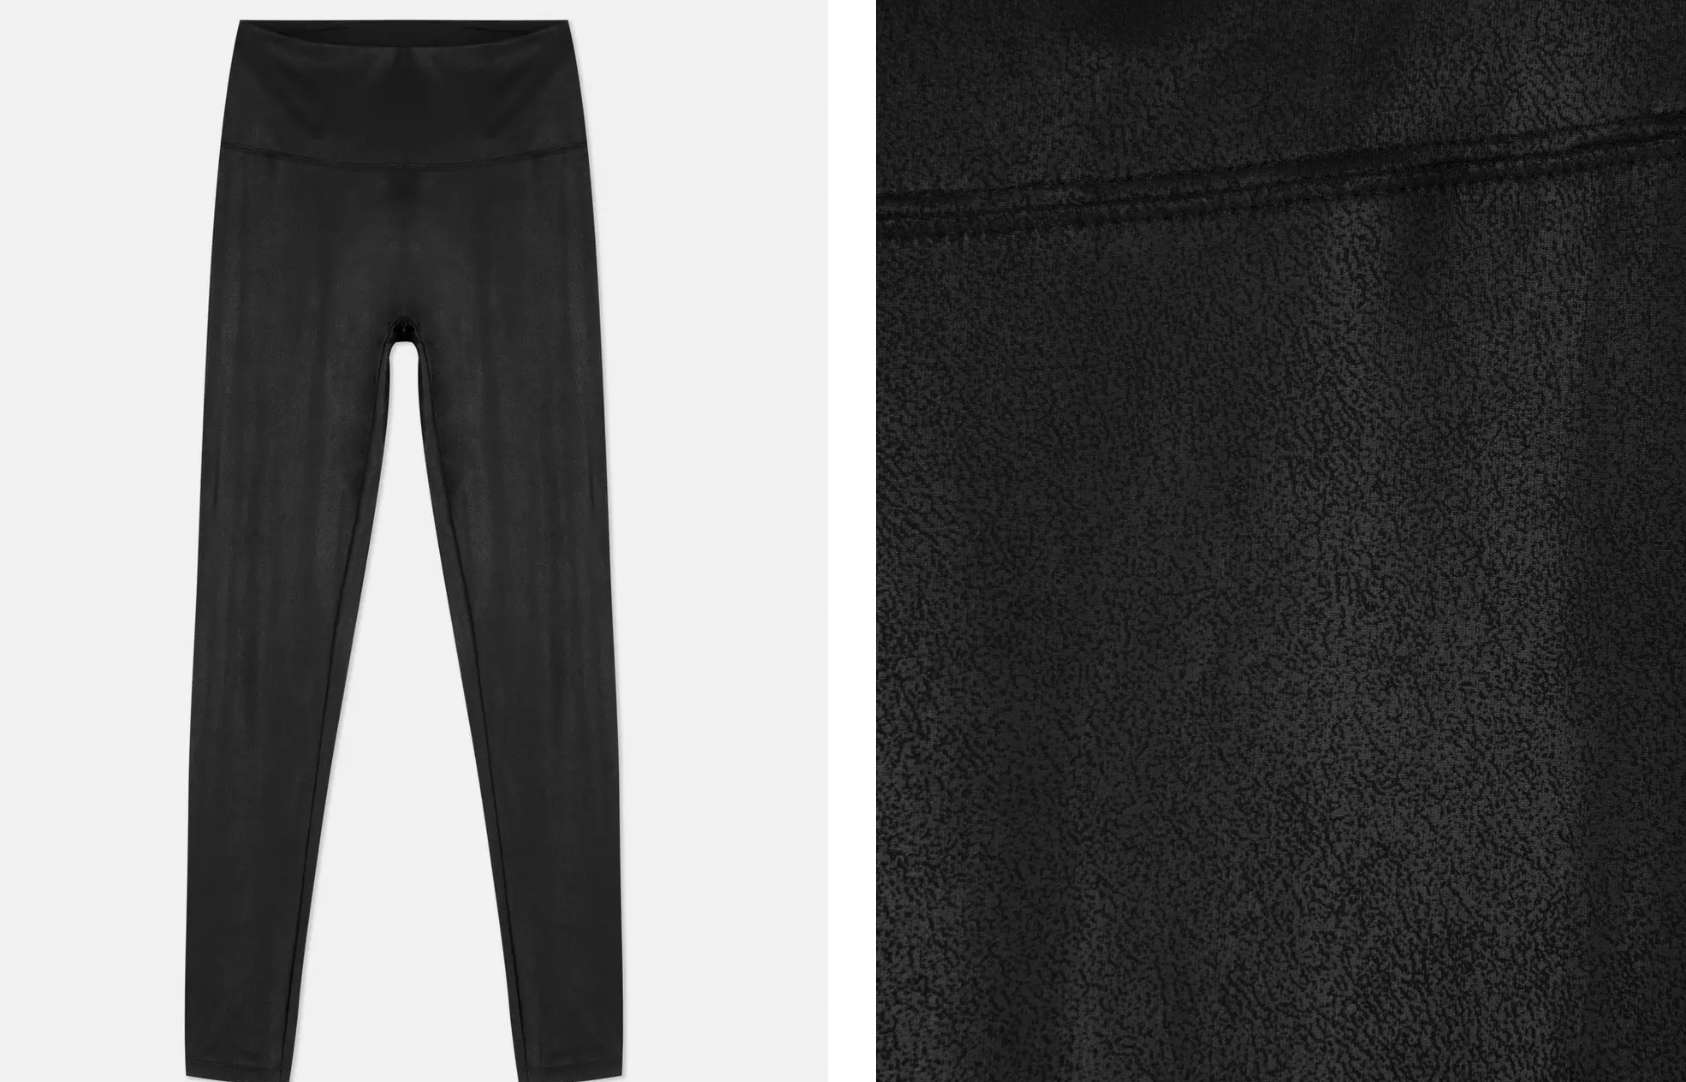 Lederlady ❤ | Shiny leggings, Shiny pants, Outfits with leggings